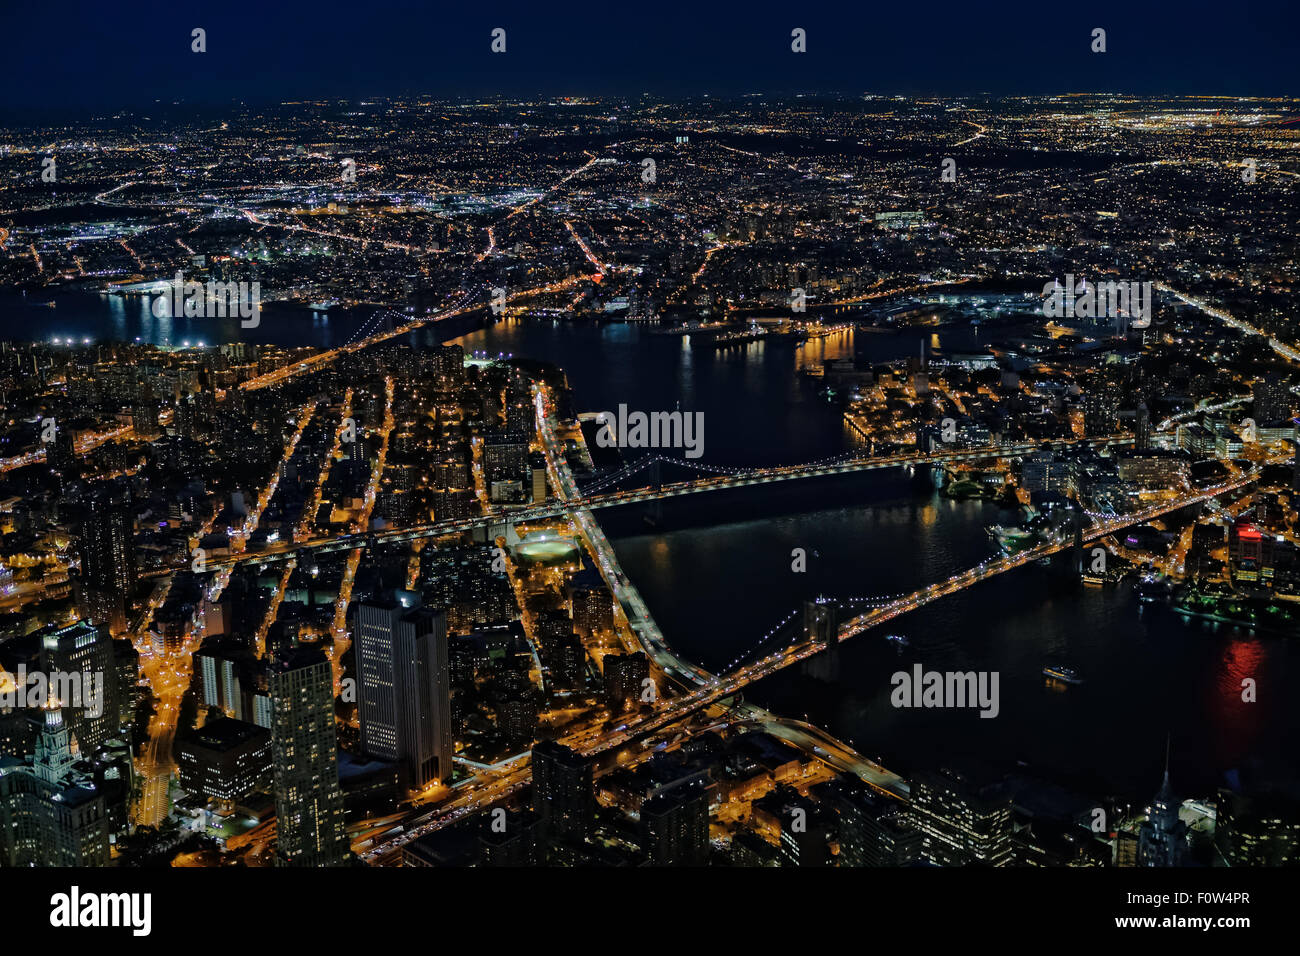 Brooklyn, Manhattan et Williamsburg Bridges Vue Aérienne - une vue de dessus à l'allumé le lower Manhattan à New York, le quartier de Brooklyn et le Brooklyn, Manhattan et Williamsburg de ponts au cours de l'heure bleue du crépuscule. Banque D'Images